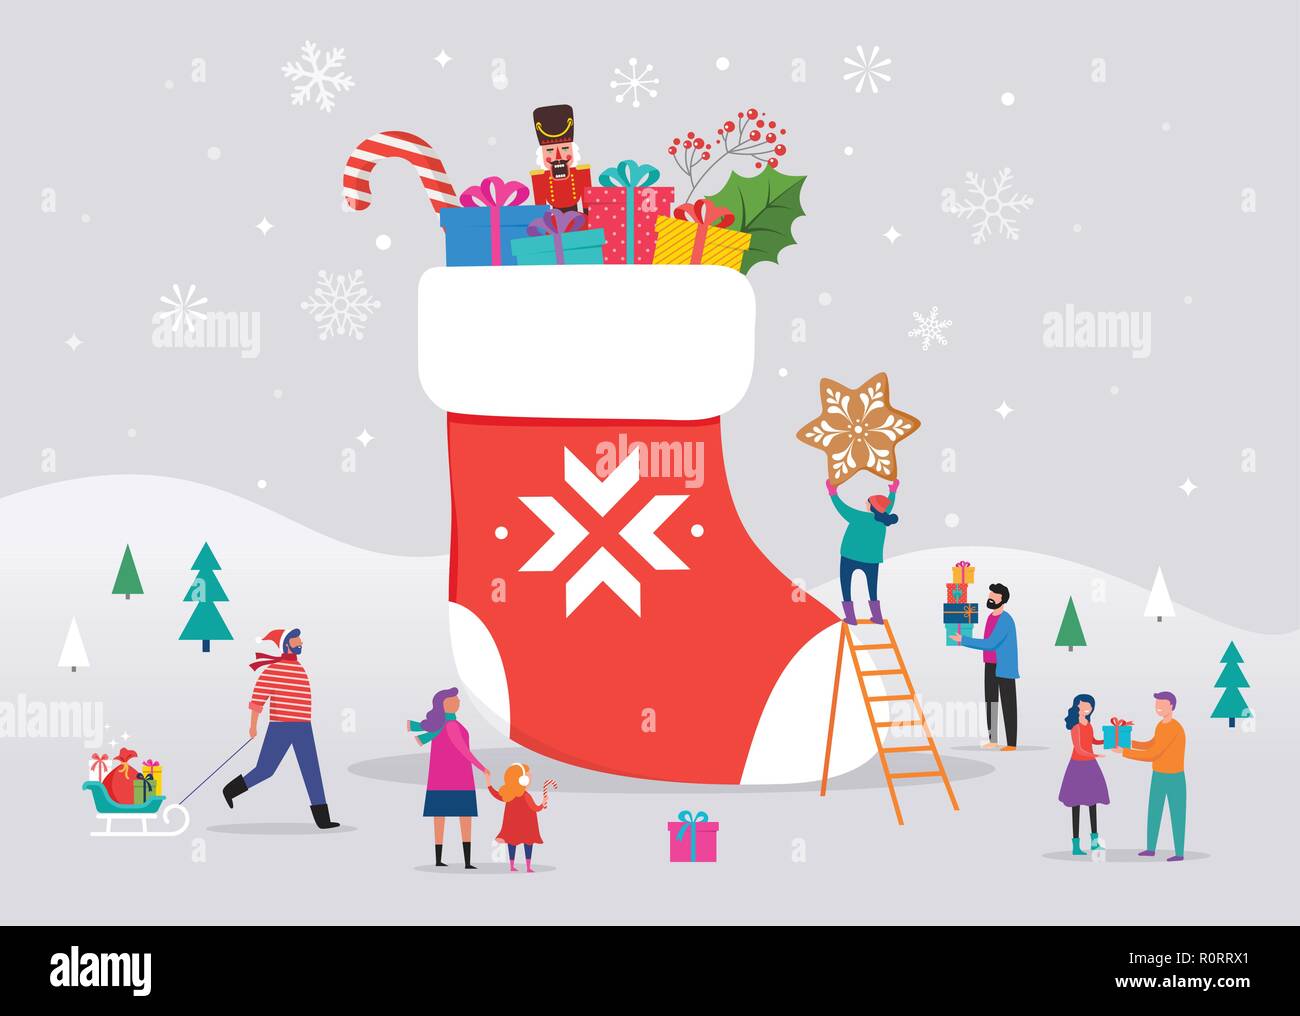 Buon Natale, scena invernale con una grande calza rossa con confezioni regalo e piccoli, giovani uomini e donne, famiglie avendo divertimento nella neve, sci, snowboard, slittino, pattinaggio su ghiaccio Illustrazione Vettoriale